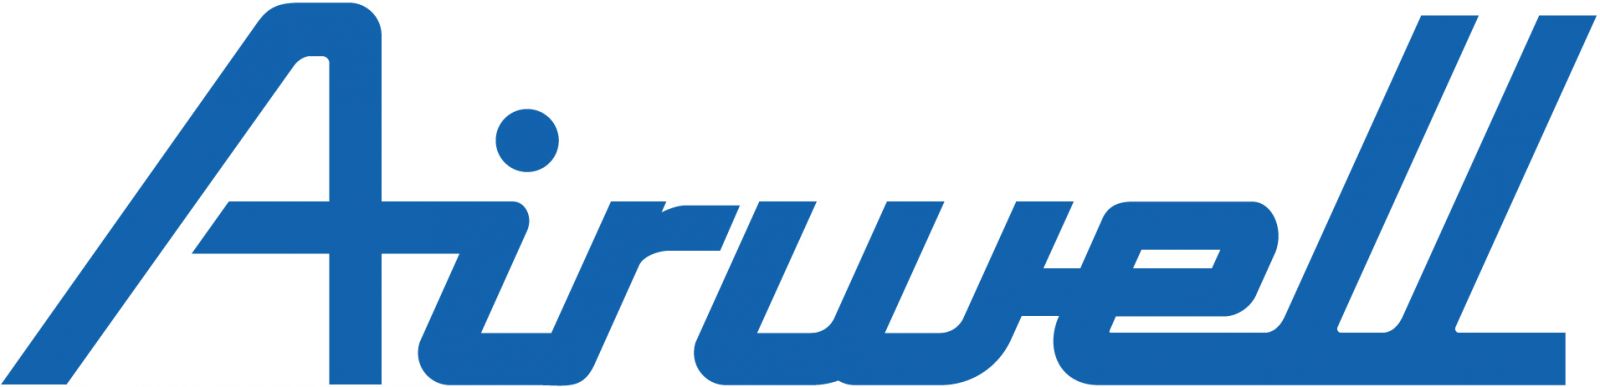 Логотип Airwell